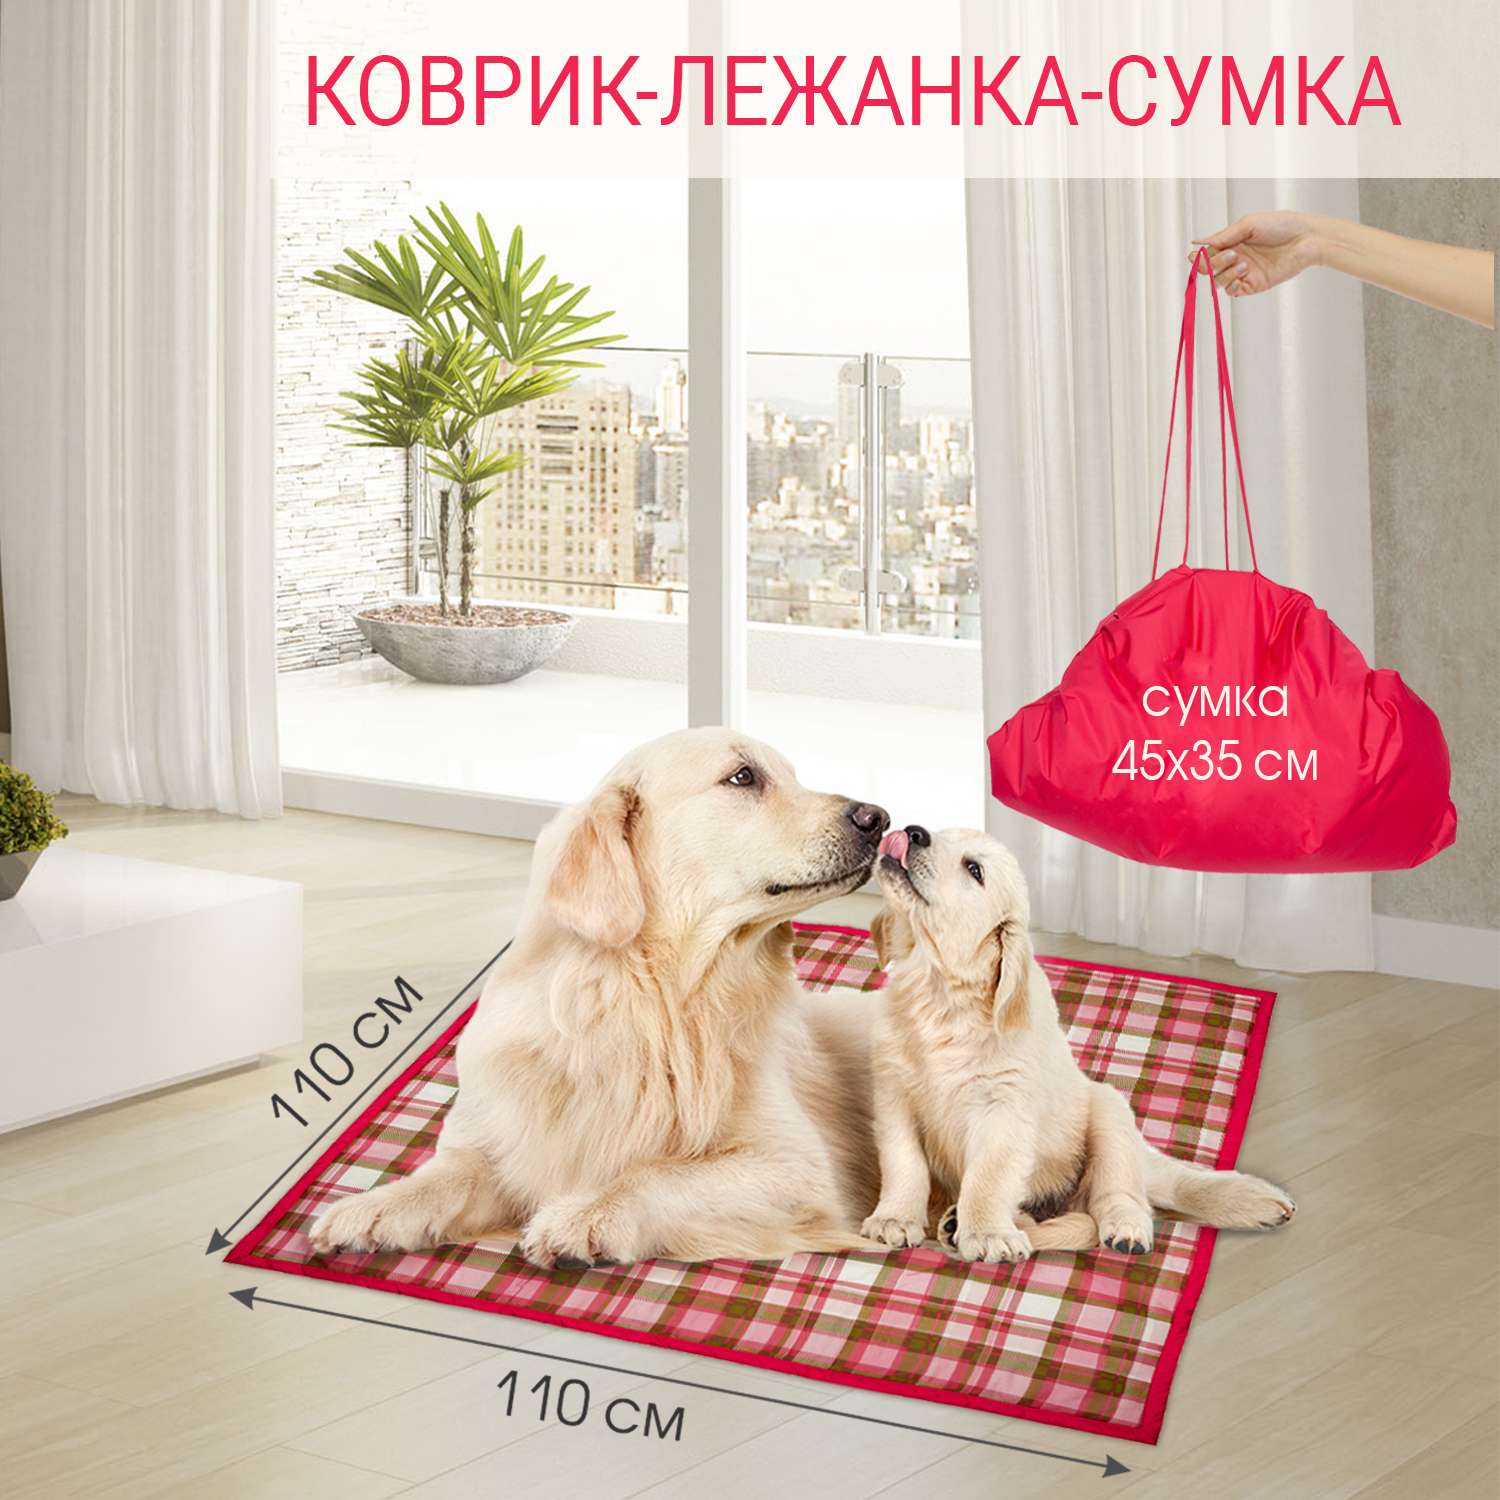 Лежанка для собак Чудо-чадо Большой складной коврик 110х110 см клетка бордовая - фото 1